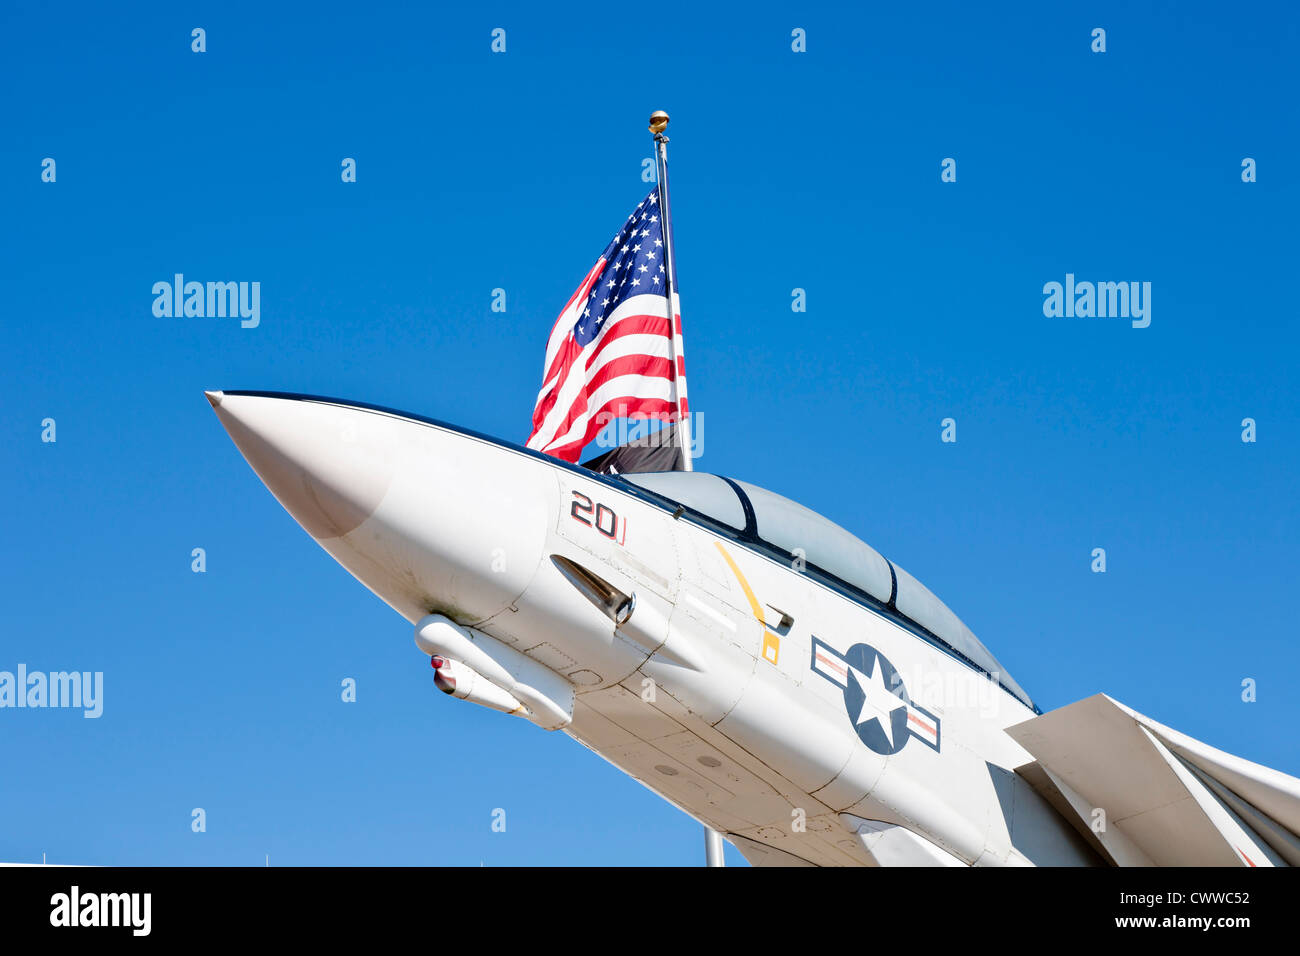 F-14A Tomcat fighter jet en face du Musée national de l'aéronavale Pensacola, FL Banque D'Images